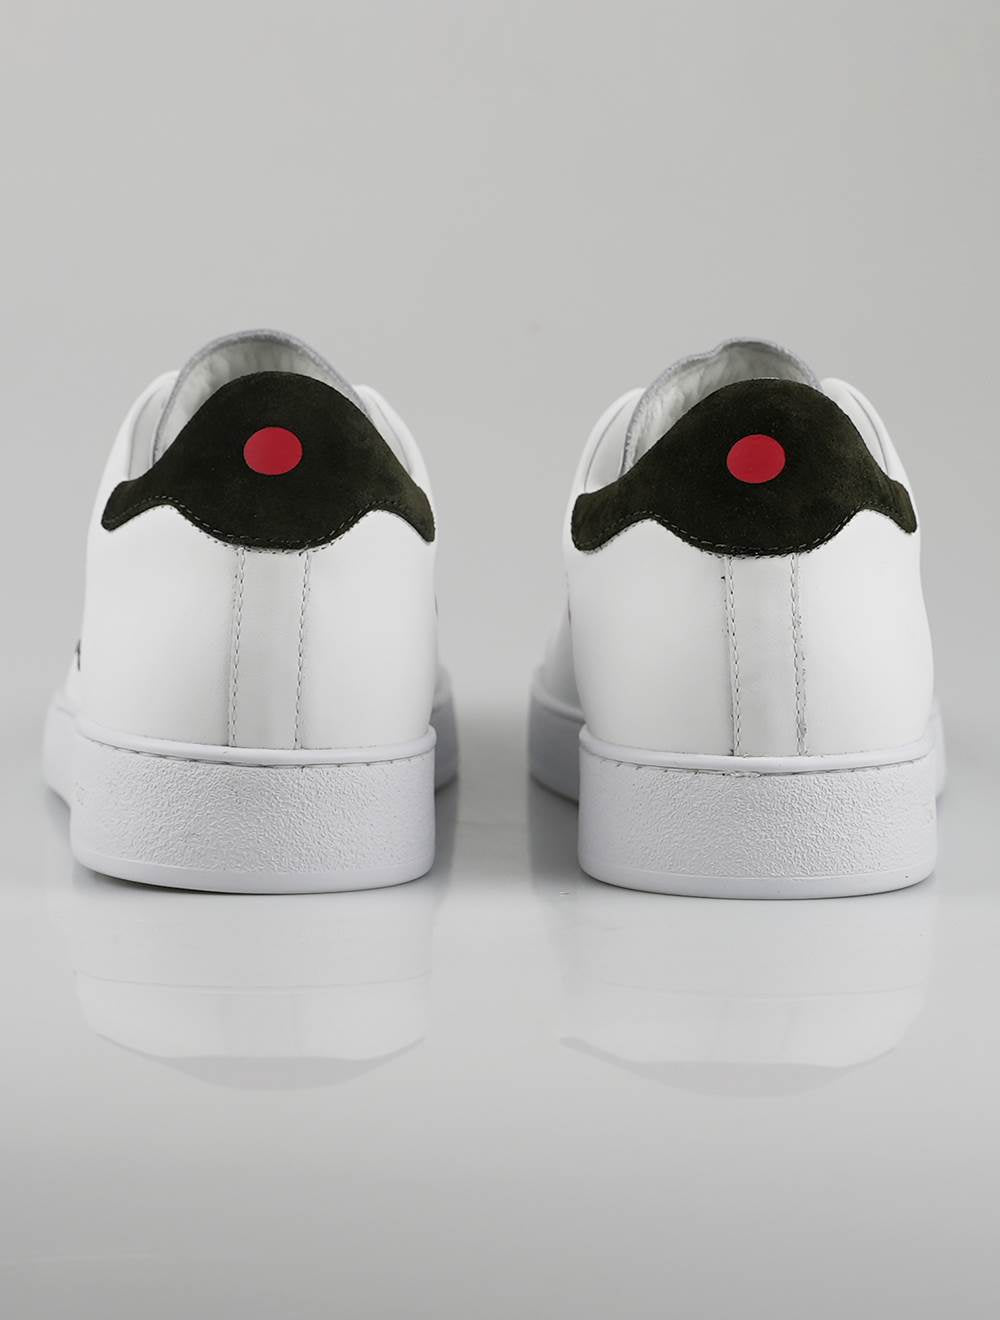 Kiton White Leather Sneakers